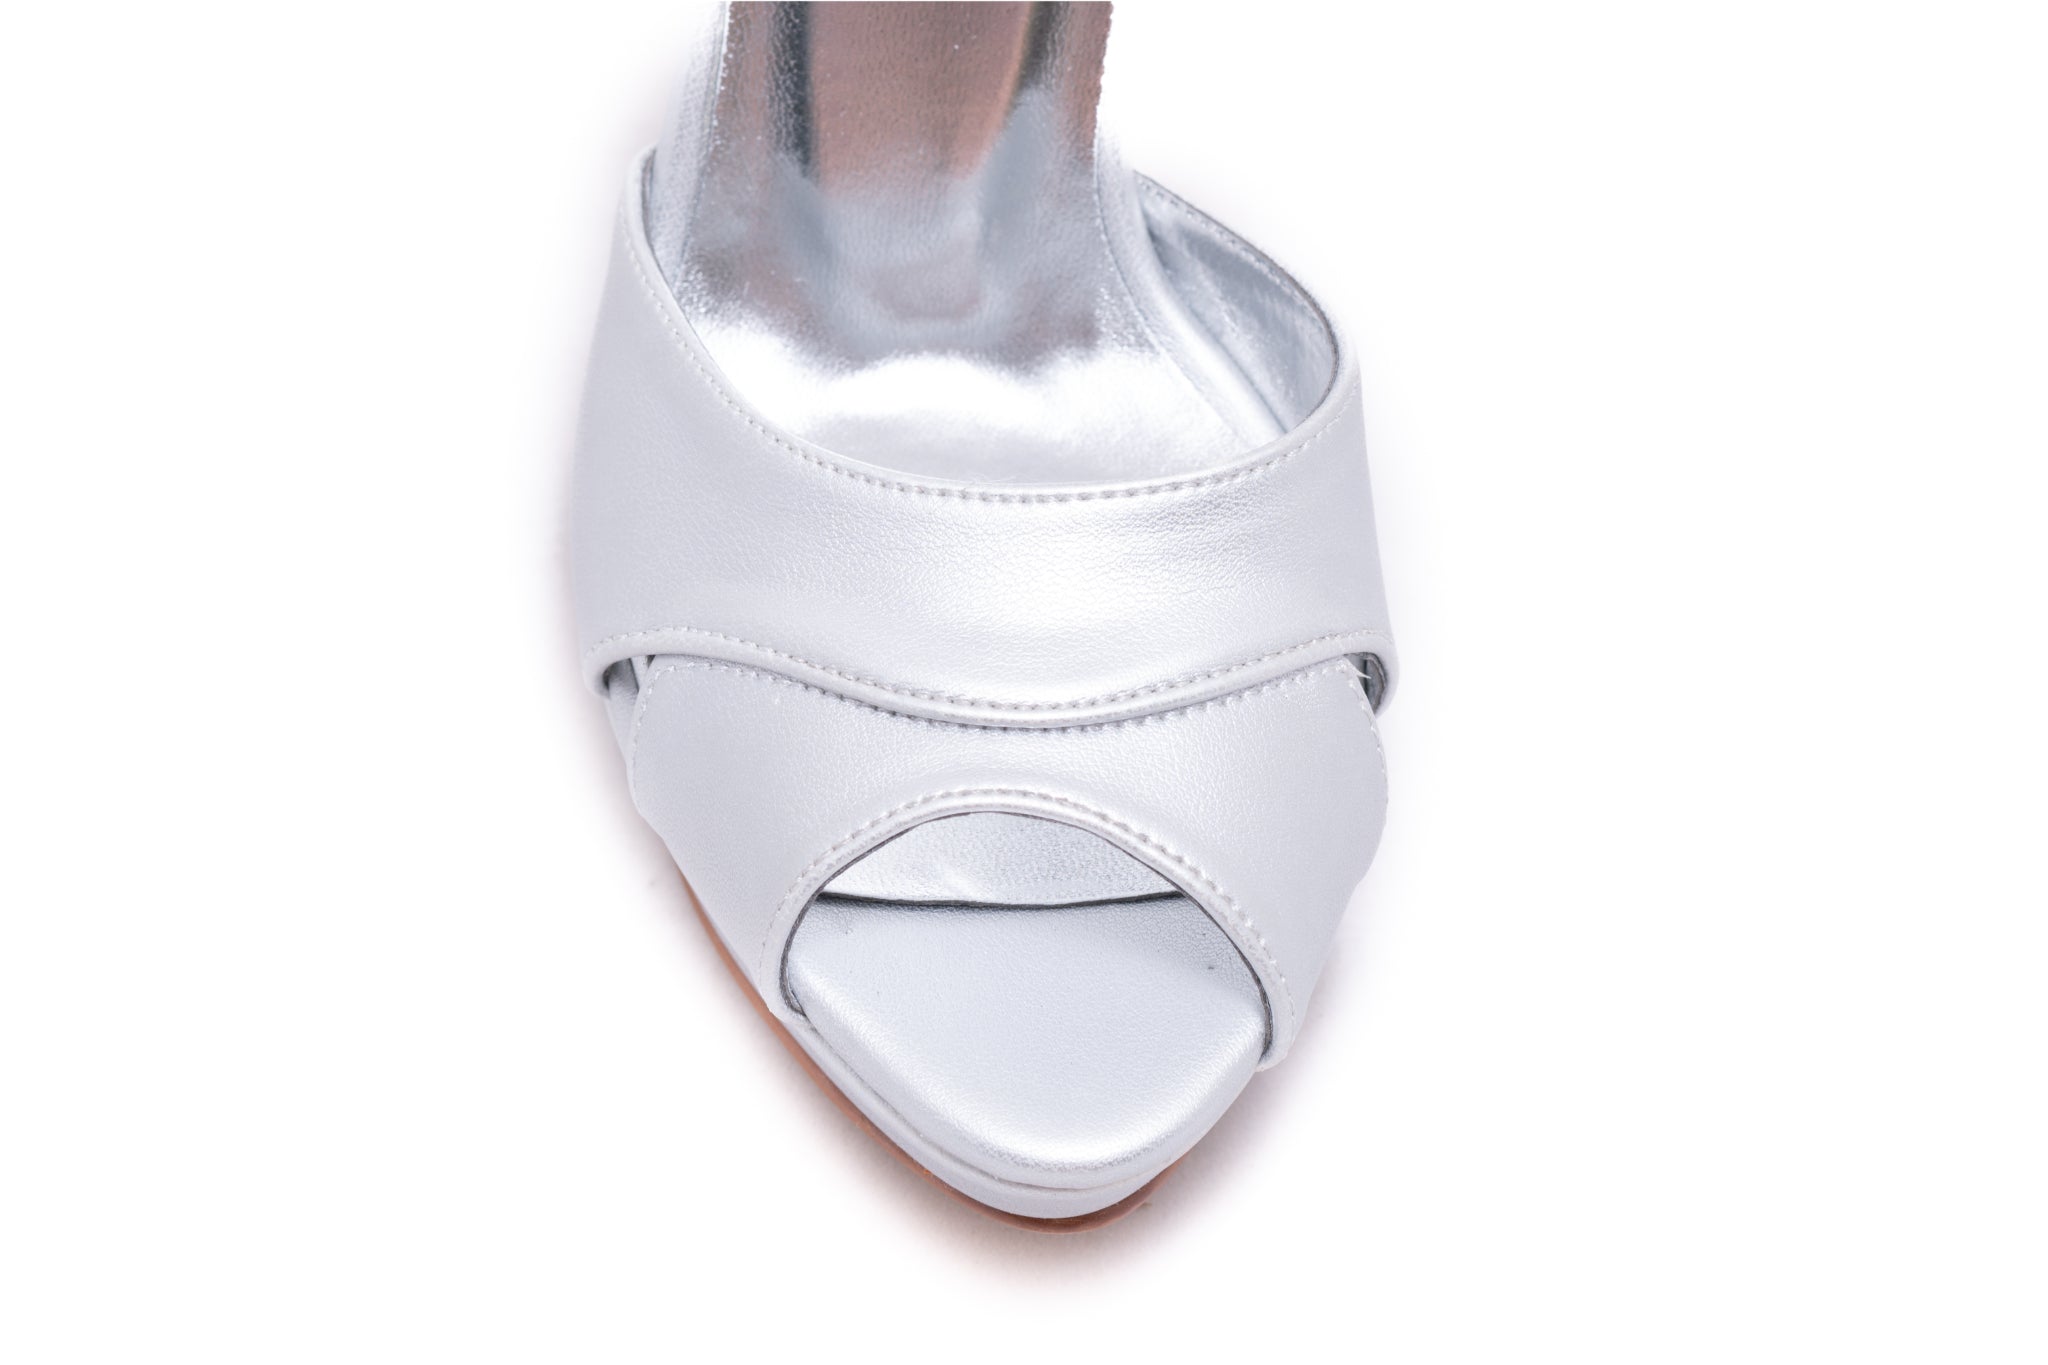 Sandale dama elegante piele ecologica 98 argintiu box